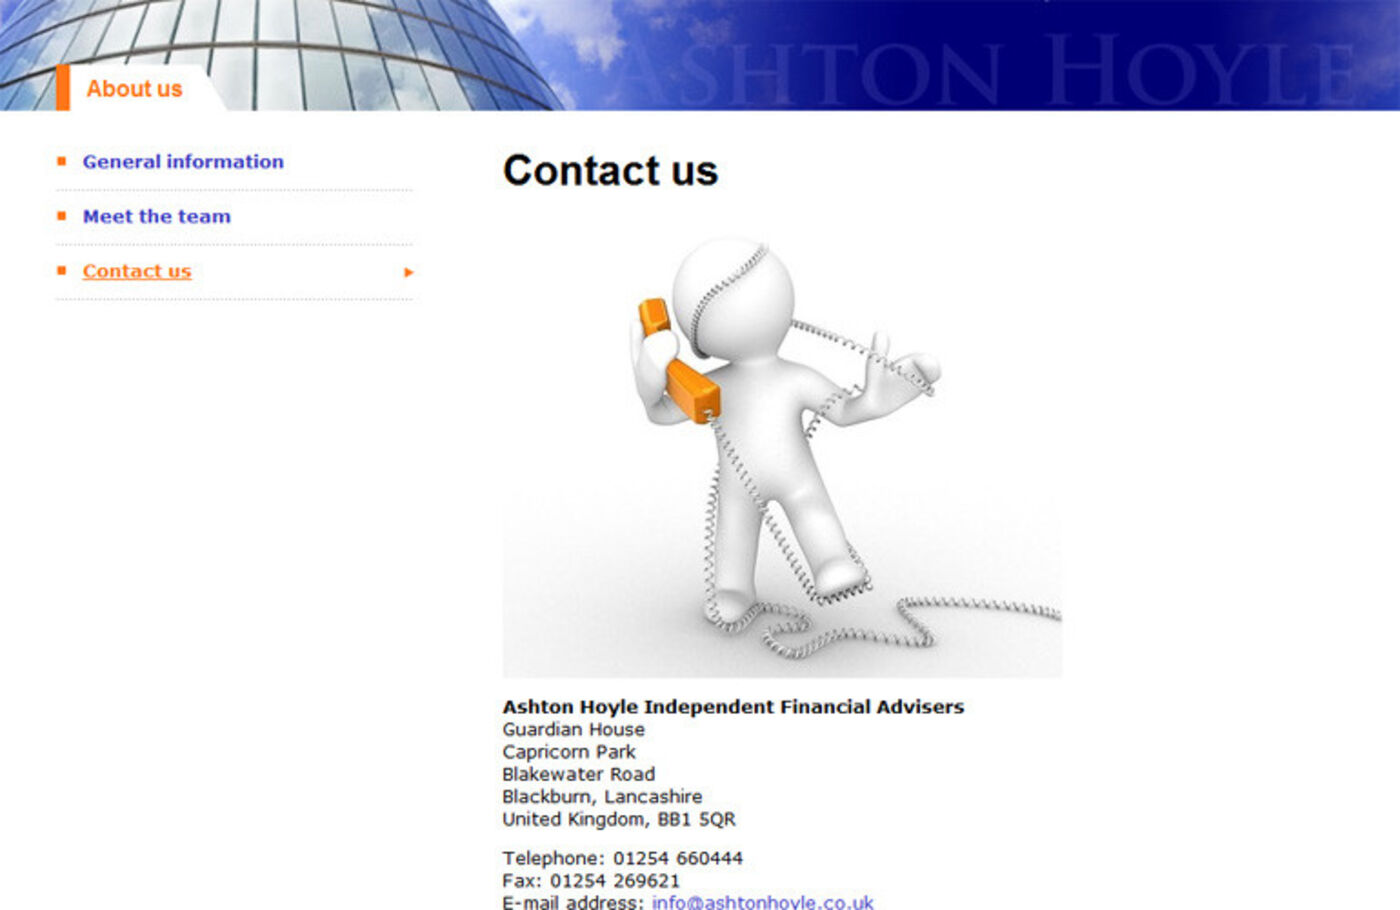 Ashton Hoyle Independent Financial Advisers Contact us - Ashton Hoyle